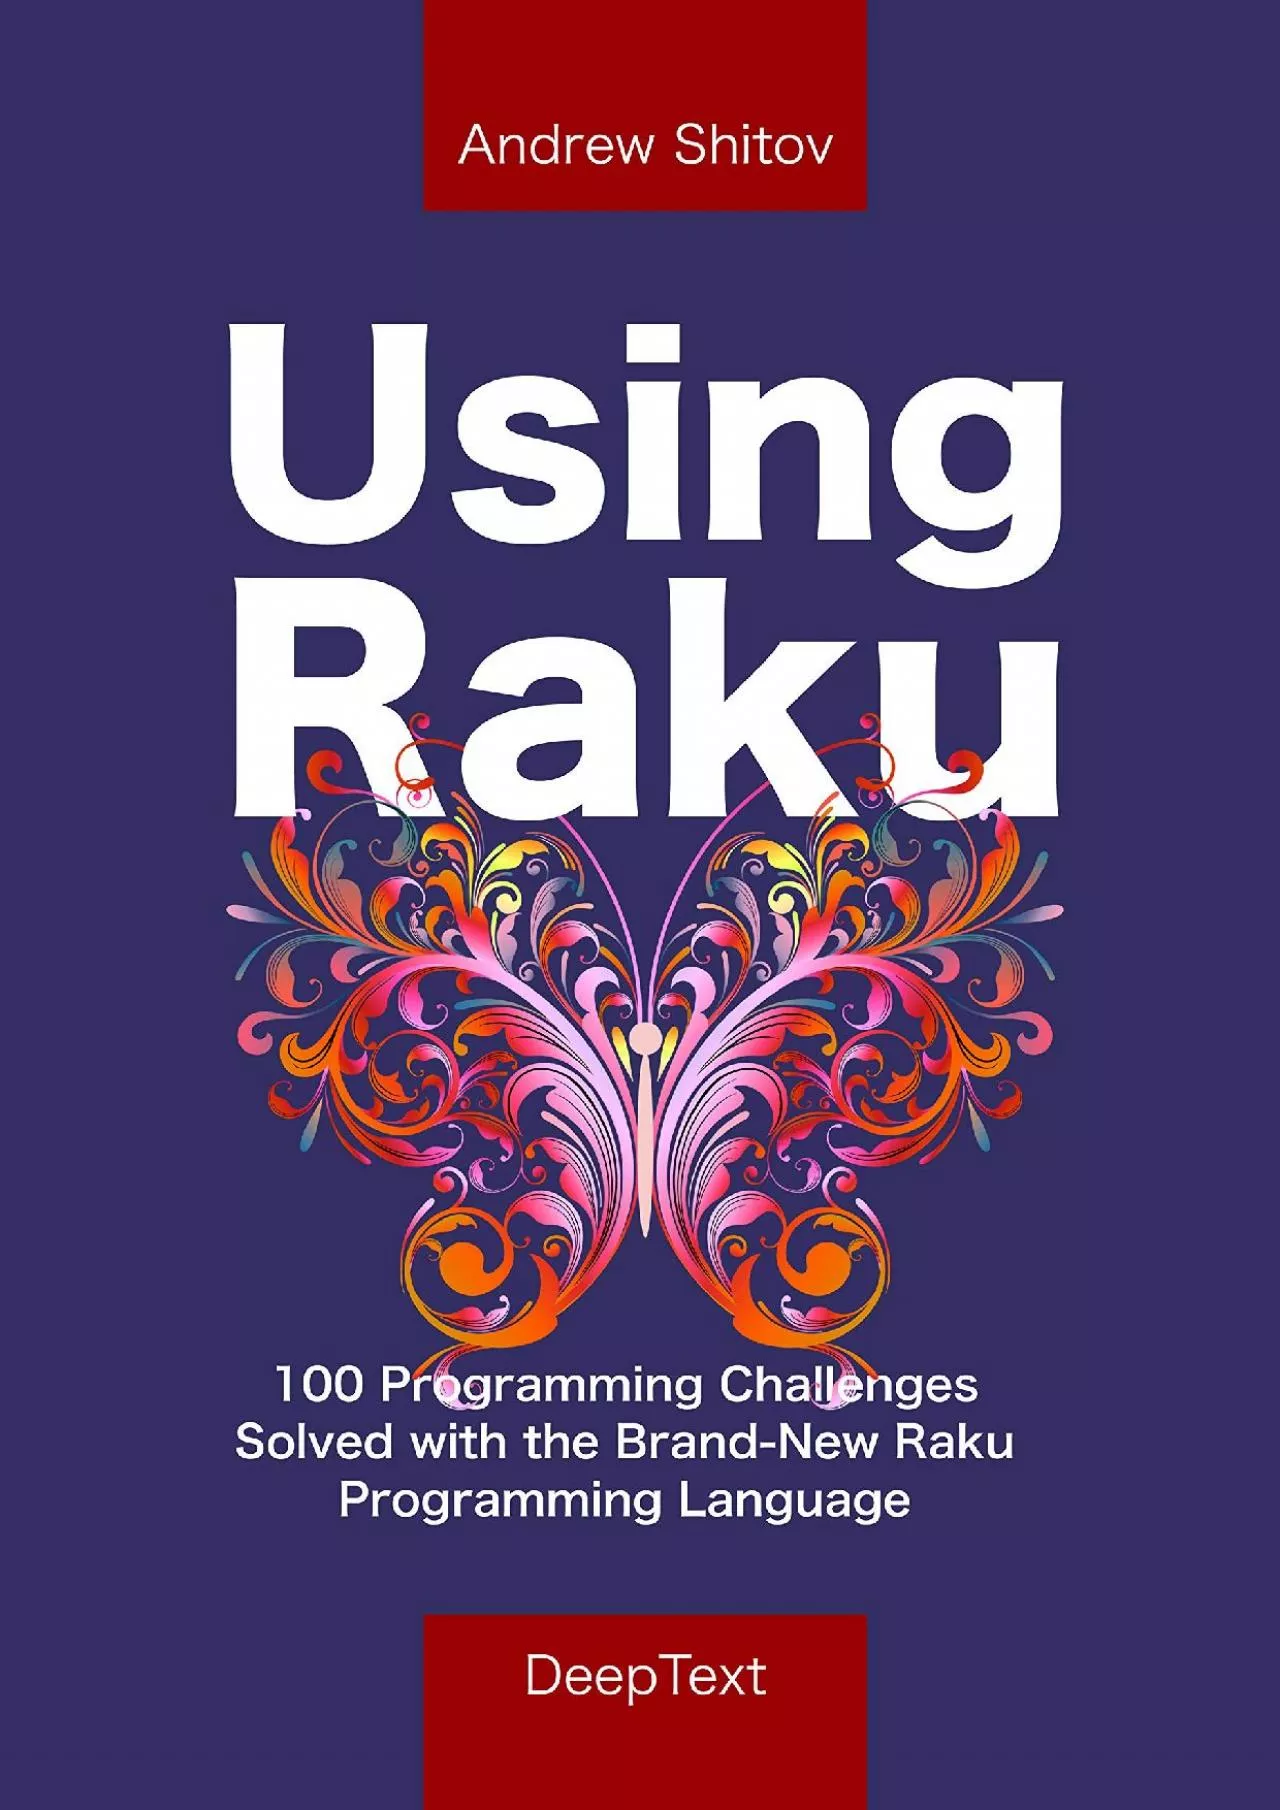 [DOWLOAD]-Using Raku: 100 Programming Challenges Solved in the Raku Programming Language